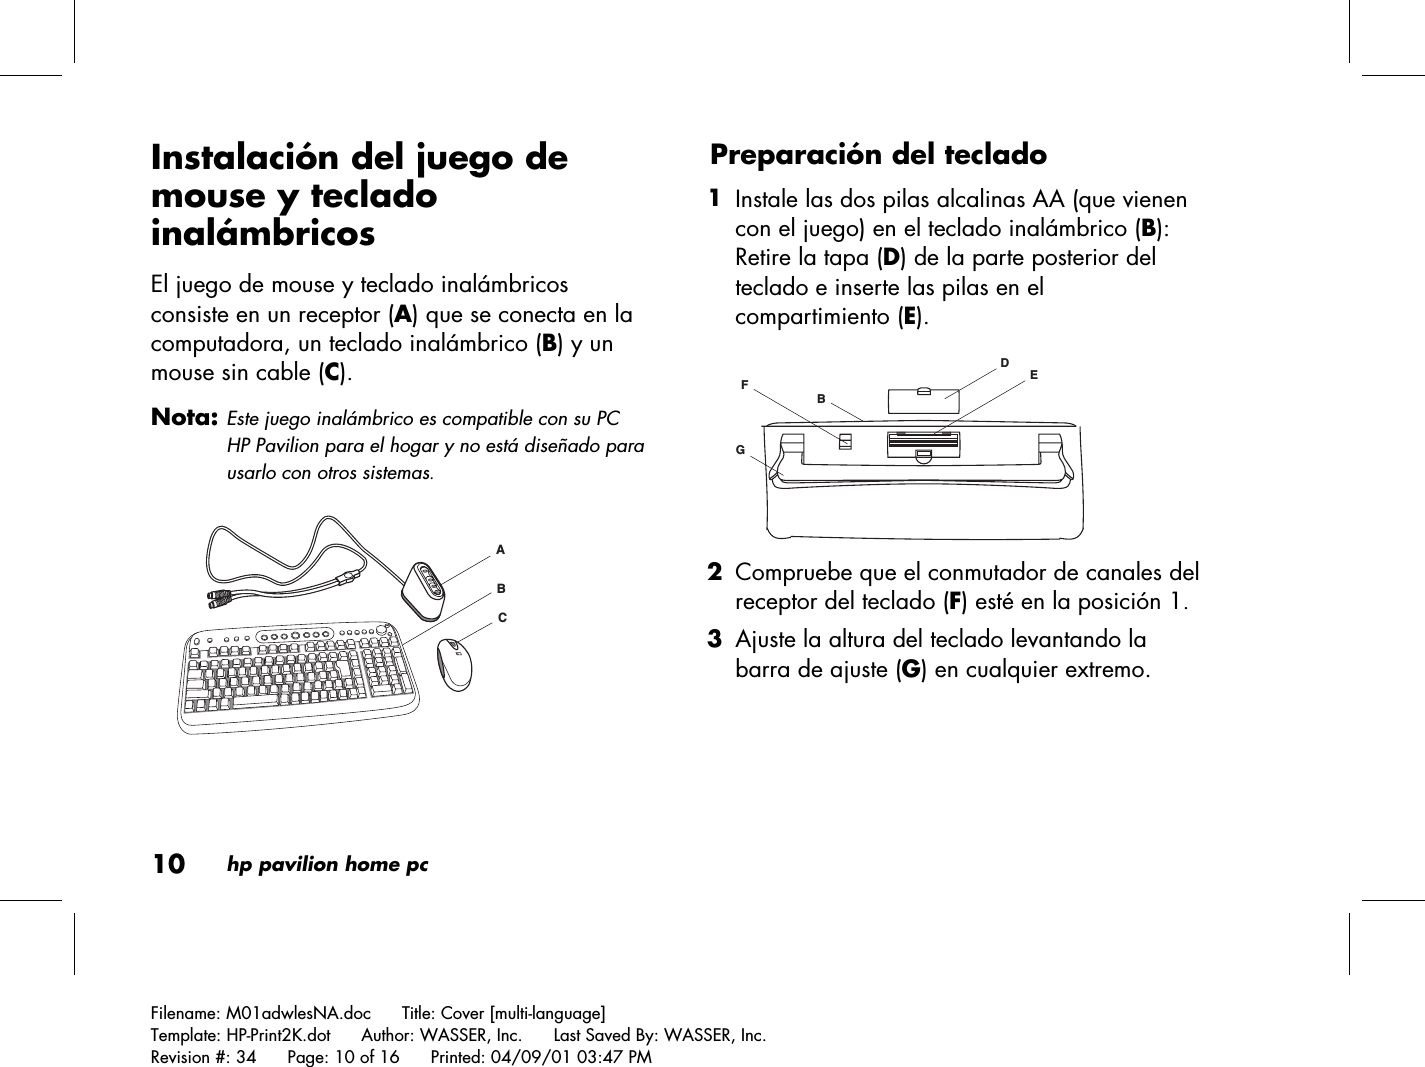 10hp pavilion home pcFilename: M01adwlesNA.doc      Title: Cover [multi-language]Template: HP-Print2K.dot      Author: WASSER, Inc.      Last Saved By: WASSER, Inc.Revision #: 34      Page: 10 of 16      Printed: 04/09/01 03:47 PMInstalación del juego demouse y tecladoinalámbricosEl juego de mouse y teclado inalámbricosconsiste en un receptor (A) que se conecta en lacomputadora, un teclado inalámbrico (B) y unmouse sin cable (C).Nota: Este juego inalámbrico es compatible con su PCHP Pavilion para el hogar y no está diseñado parausarlo con otros sistemas.ACBPreparación del teclado 1 Instale las dos pilas alcalinas AA (que vienencon el juego) en el teclado inalámbrico (B):Retire la tapa (D) de la parte posterior delteclado e inserte las pilas en elcompartimiento (E).DEGFB 2 Compruebe que el conmutador de canales delreceptor del teclado (F) esté en la posición 1. 3 Ajuste la altura del teclado levantando labarra de ajuste (G) en cualquier extremo.